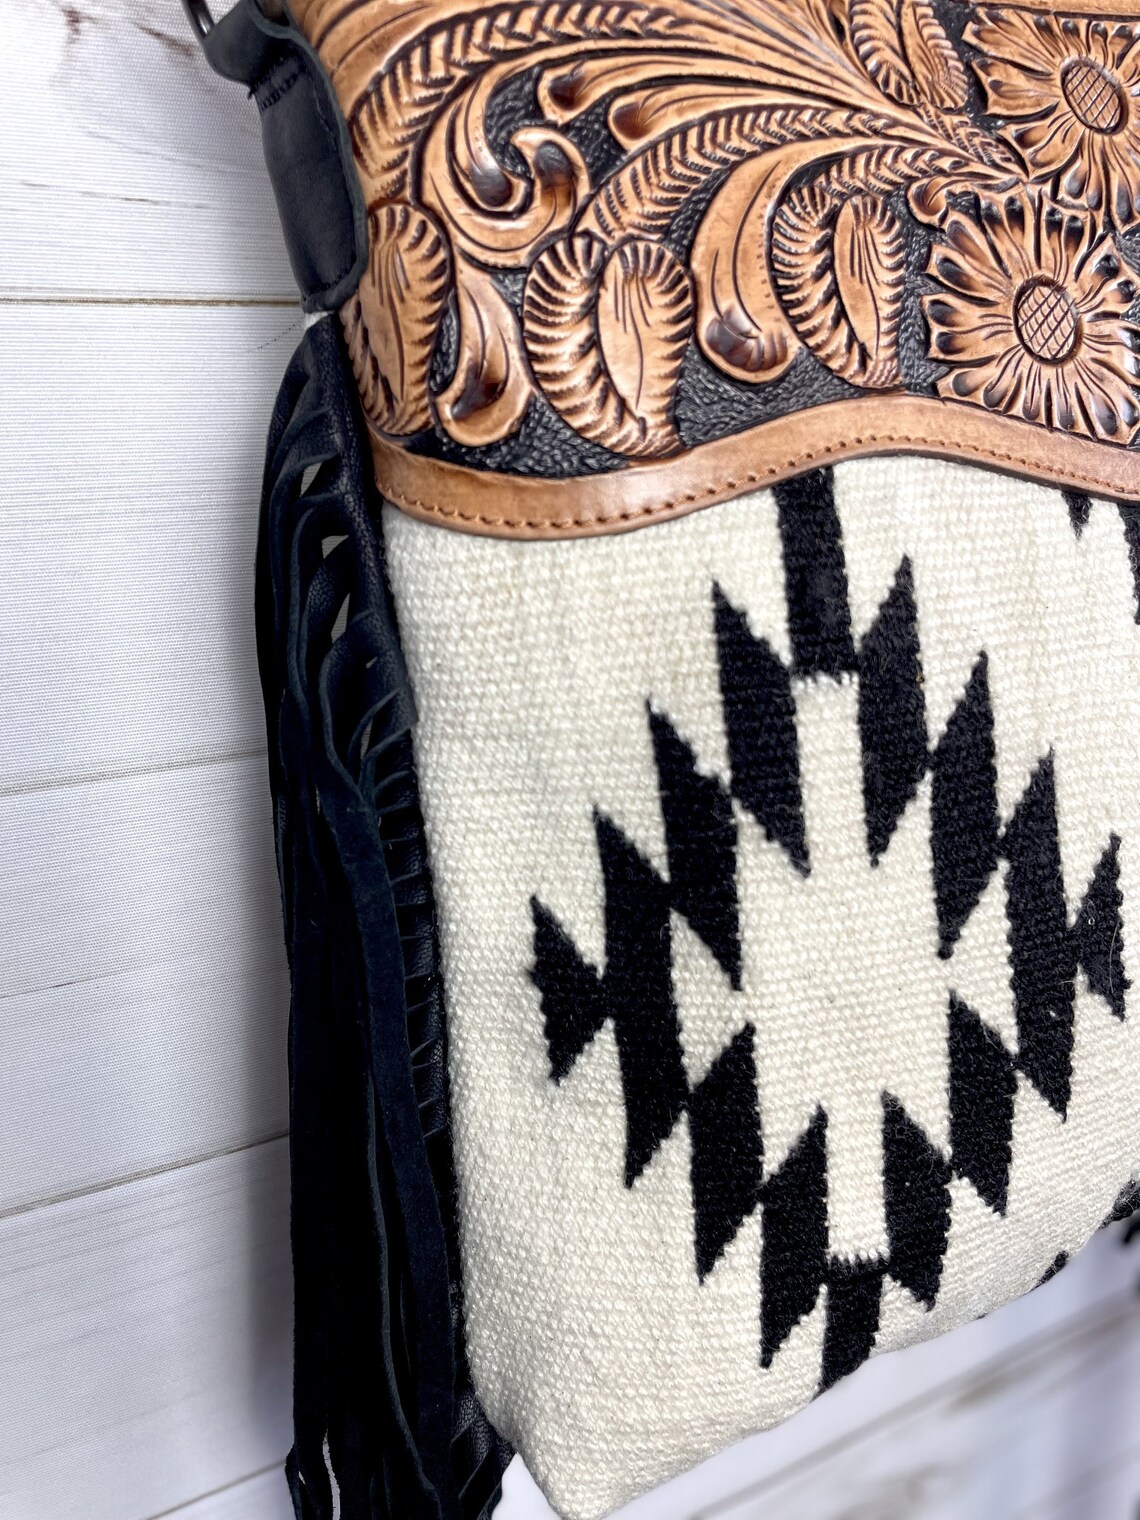 Aztec Leather Tooled Cream and Black Wool Fringe Bag | Etsy